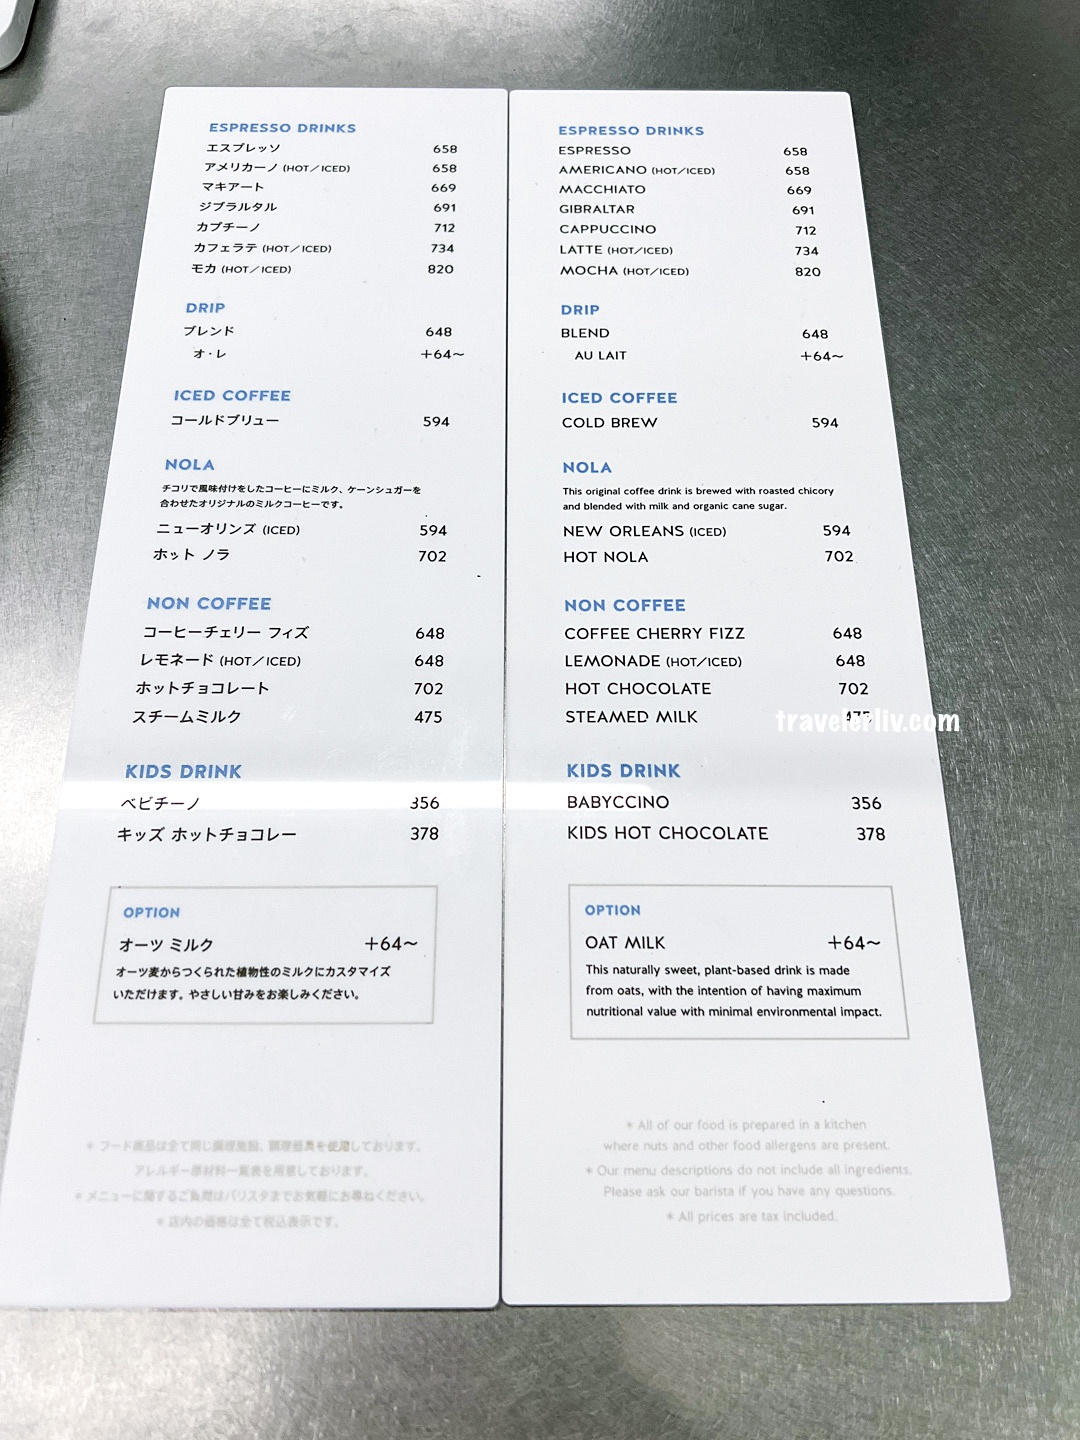 [東京美食] HUMAN MADE Cafe by Blue Bottle Coffee，藍心限定款藍瓶咖啡潮牌聯名咖啡館 (日本唯二的特色咖啡店) @莉芙小姐愛旅遊